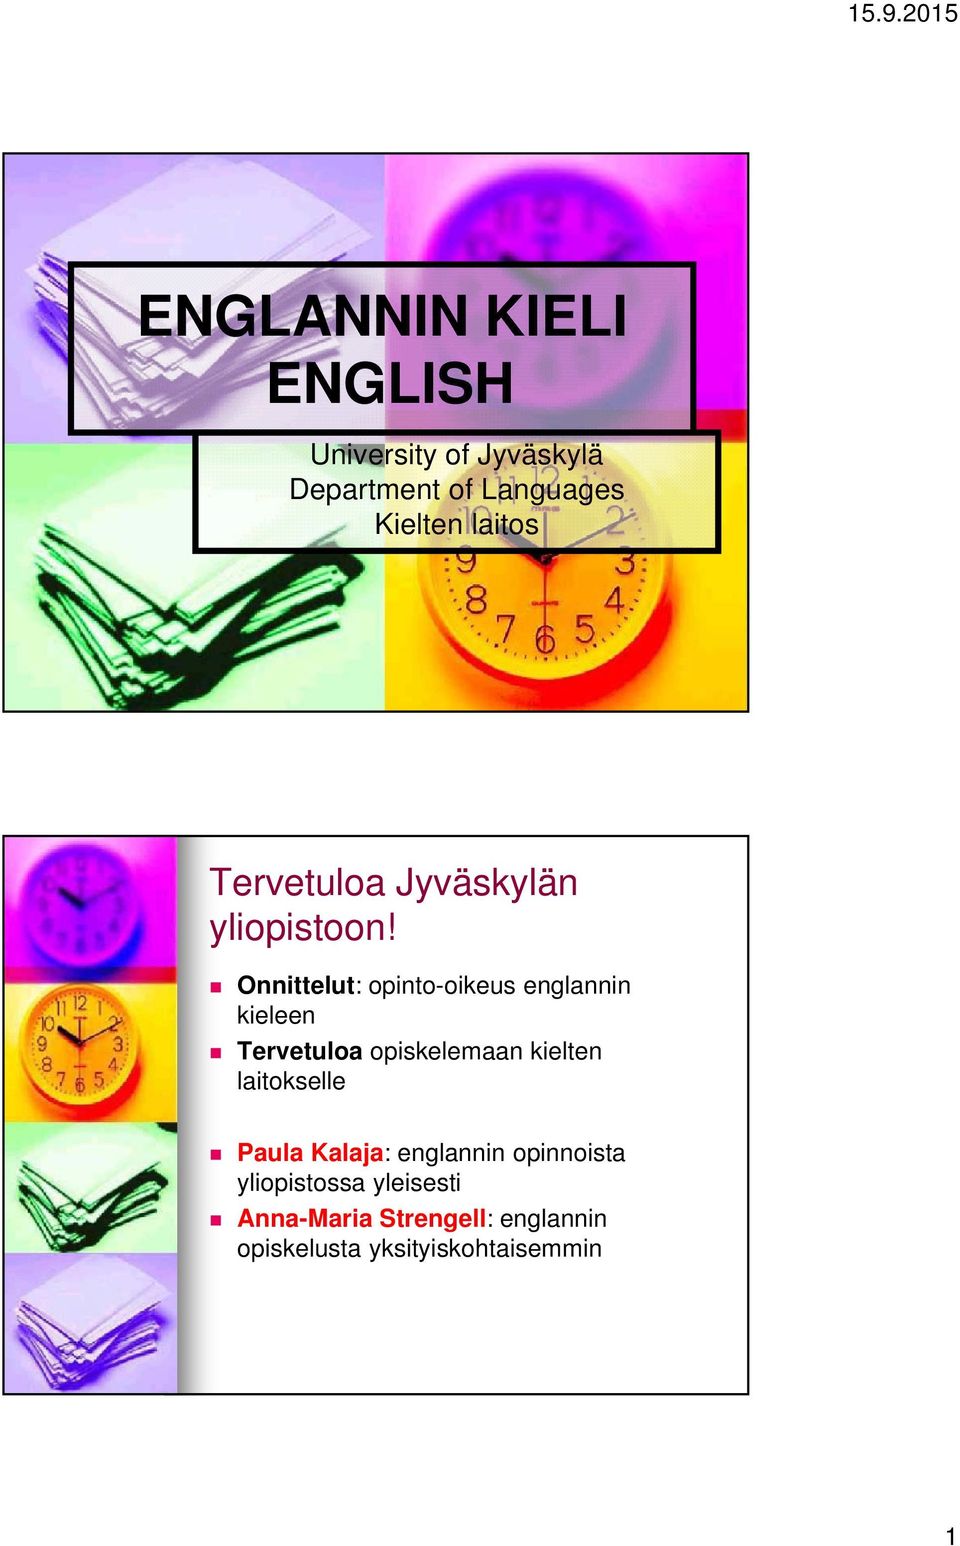 Onnittelut: opinto-oikeus englannin kieleen Tervetuloa opiskelemaan kielten